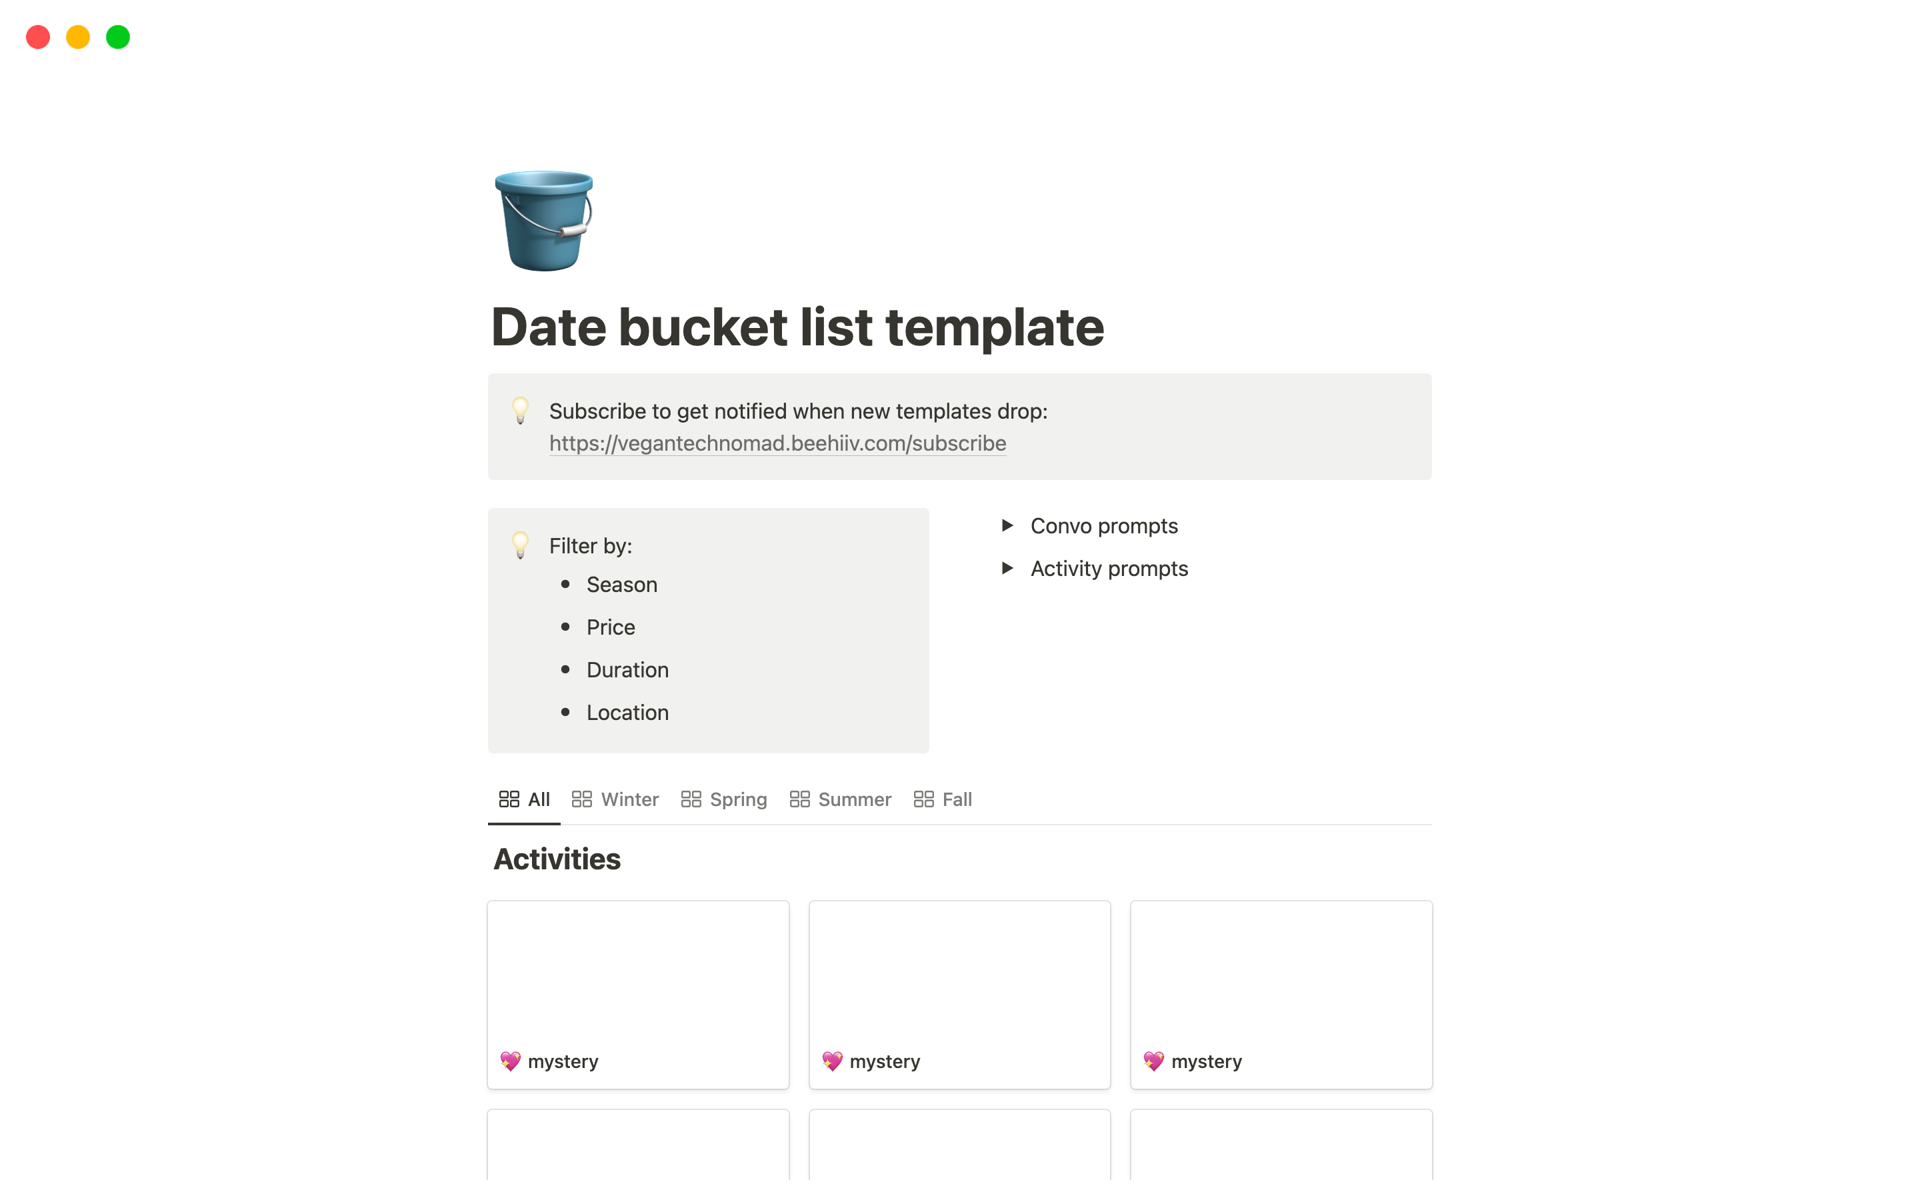 Aperçu du modèle de Date bucket list